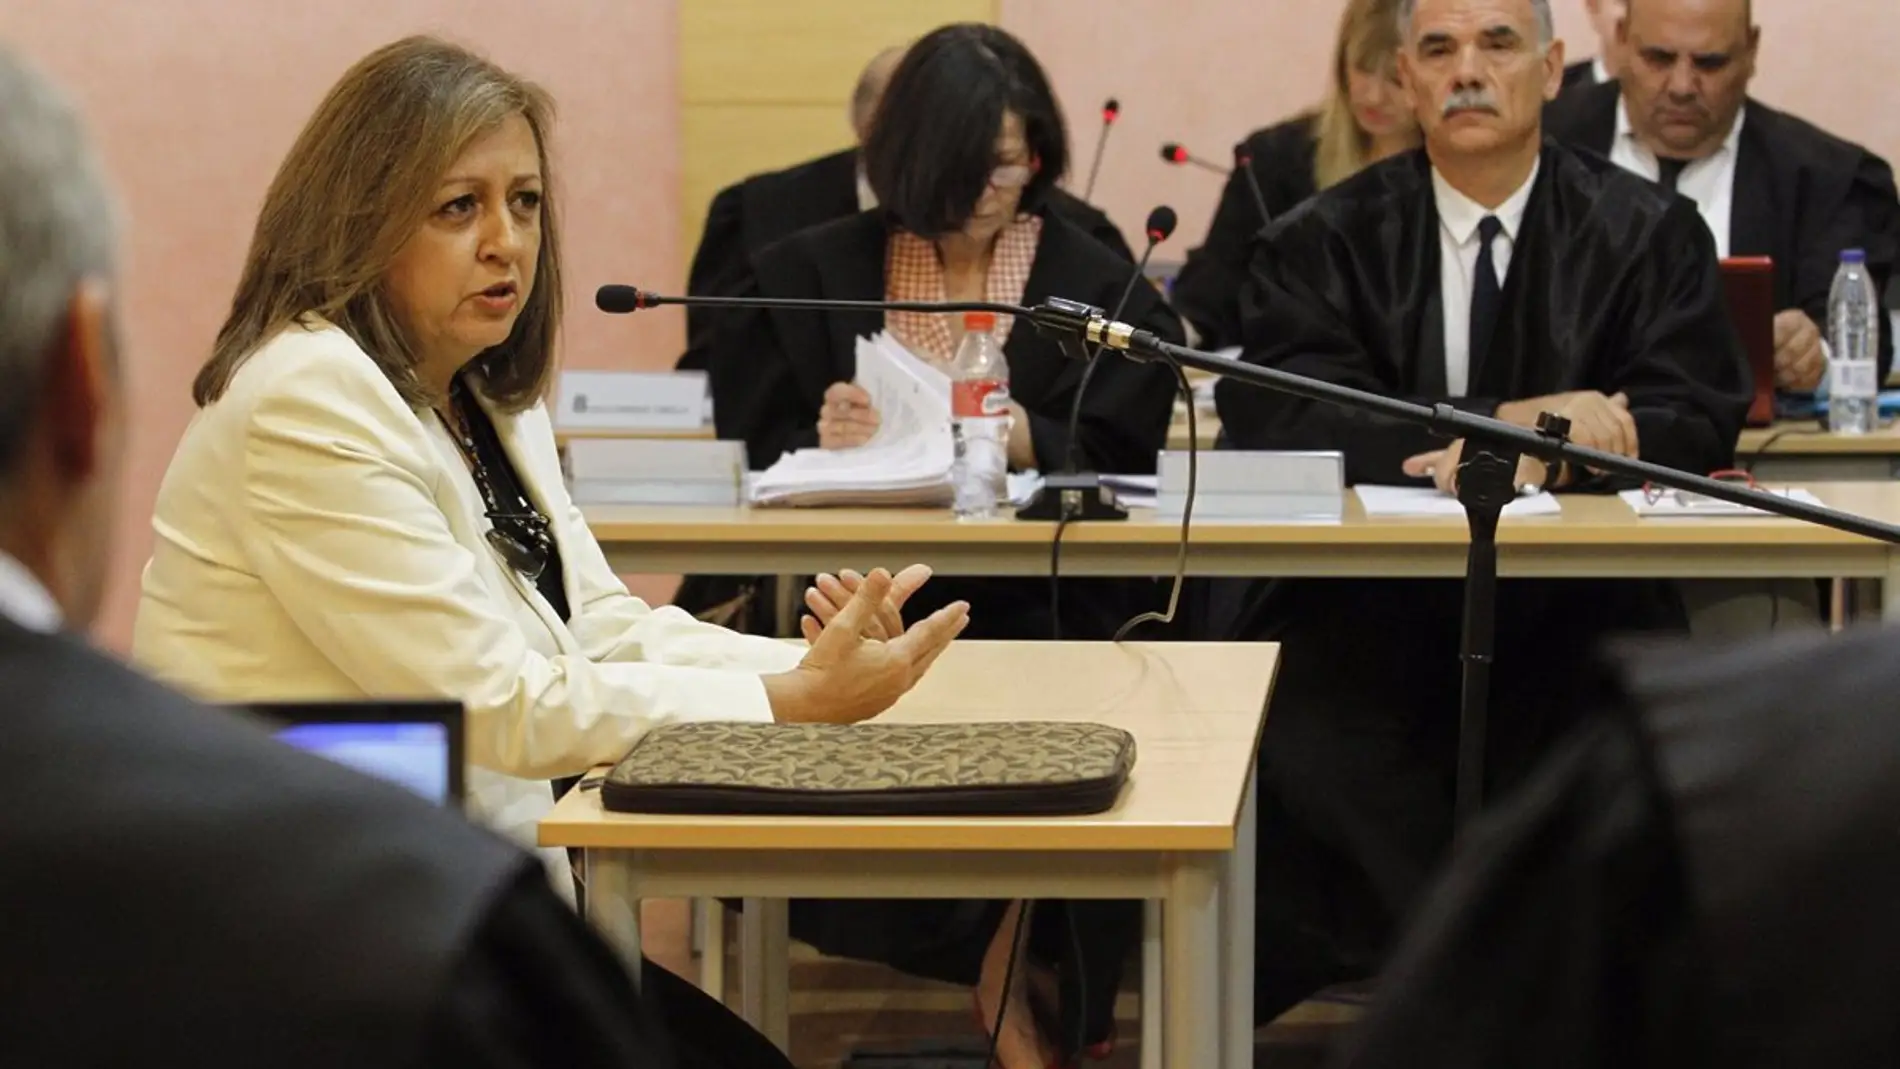 La exdirectora de la Alhambra defiende su gestión en el caso audioguías y confía en que "termine esta pesadilla"